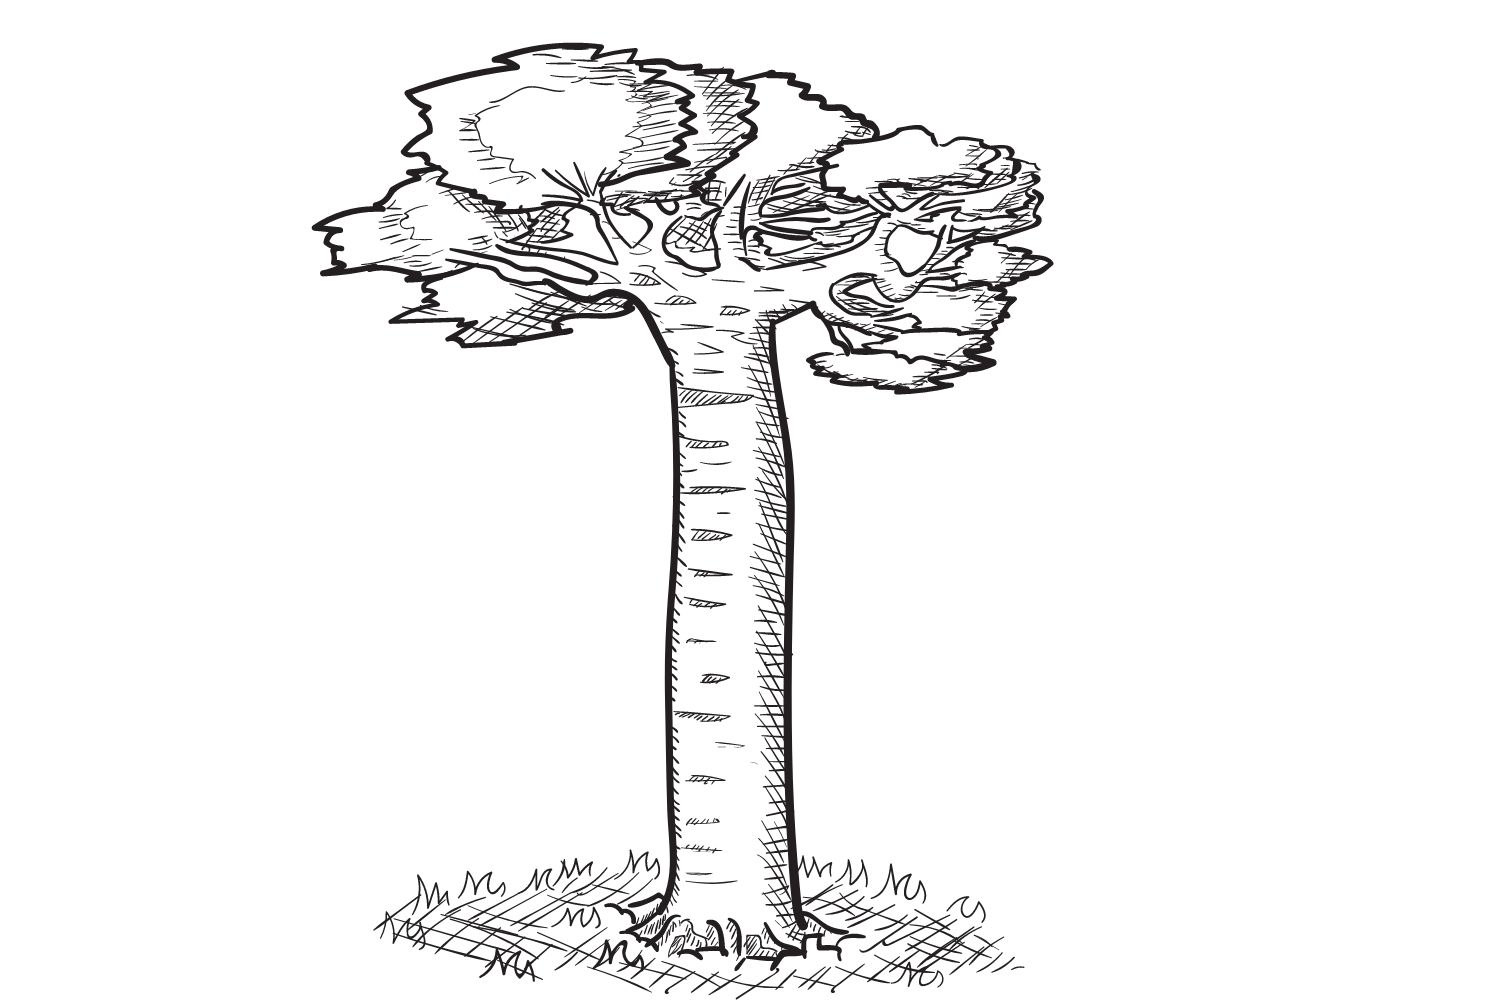 Baobab tree day